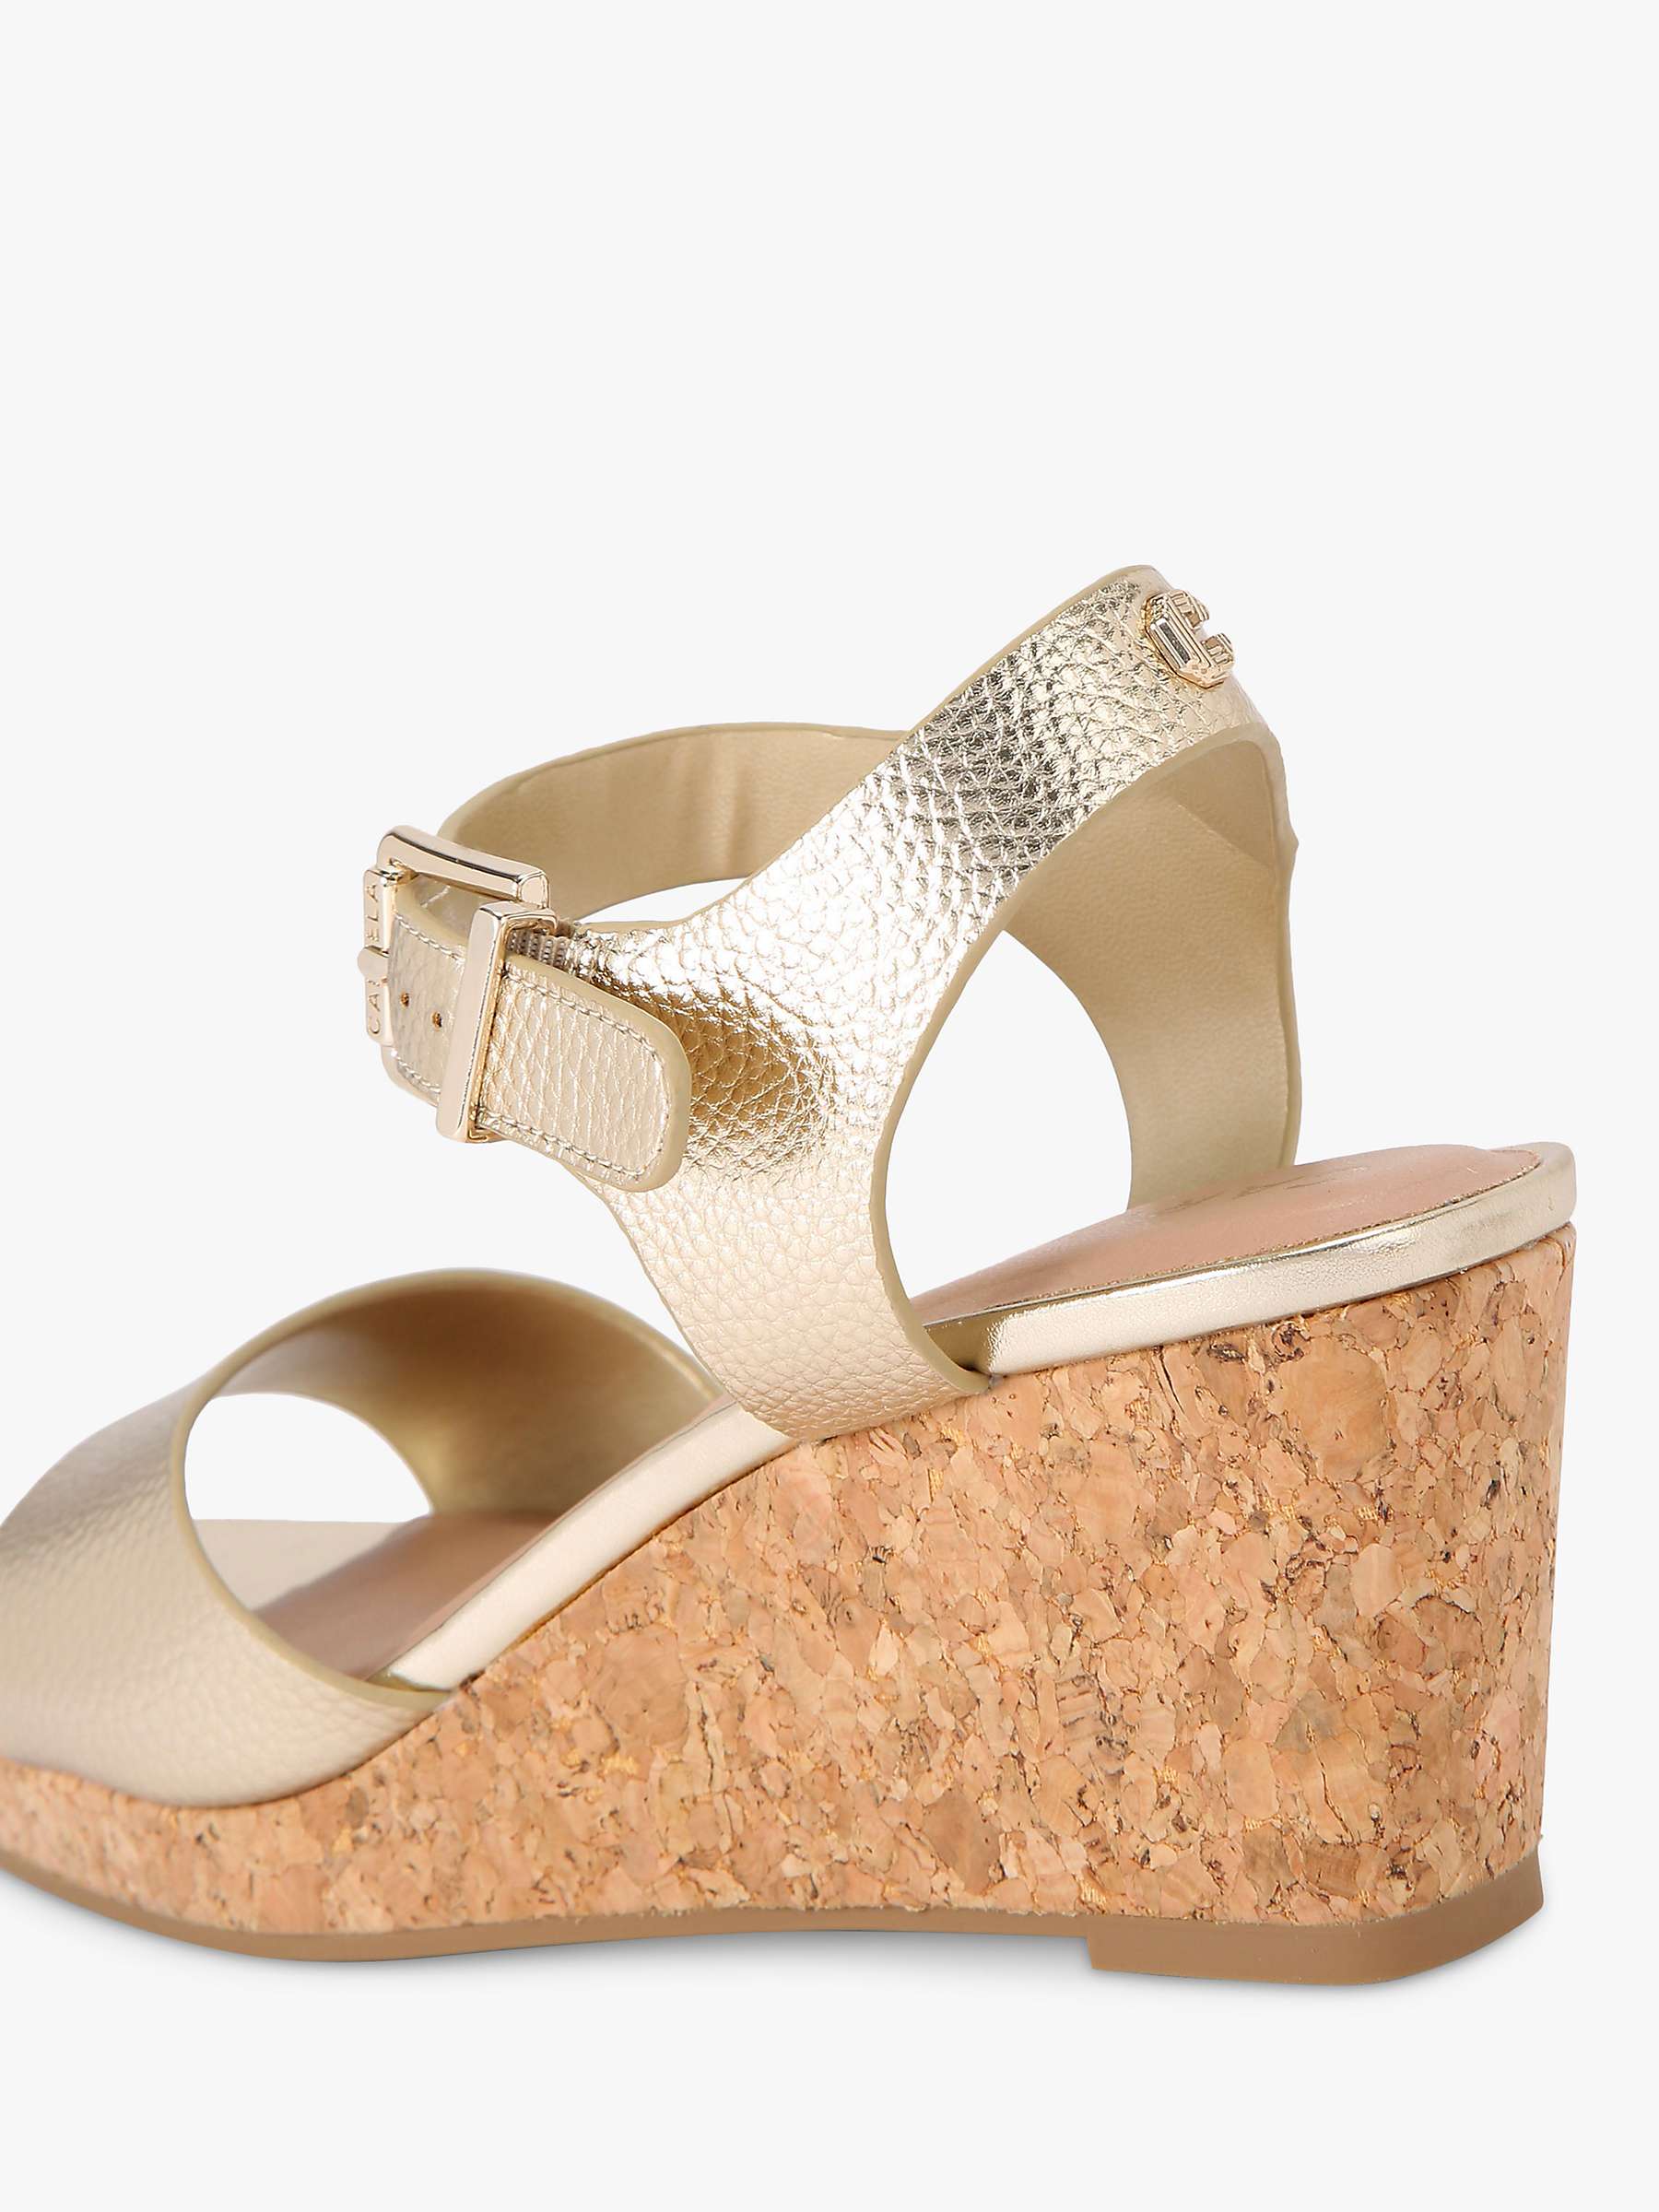 Buy Carvela Sadie Wedge Heel Sandals Online at johnlewis.com